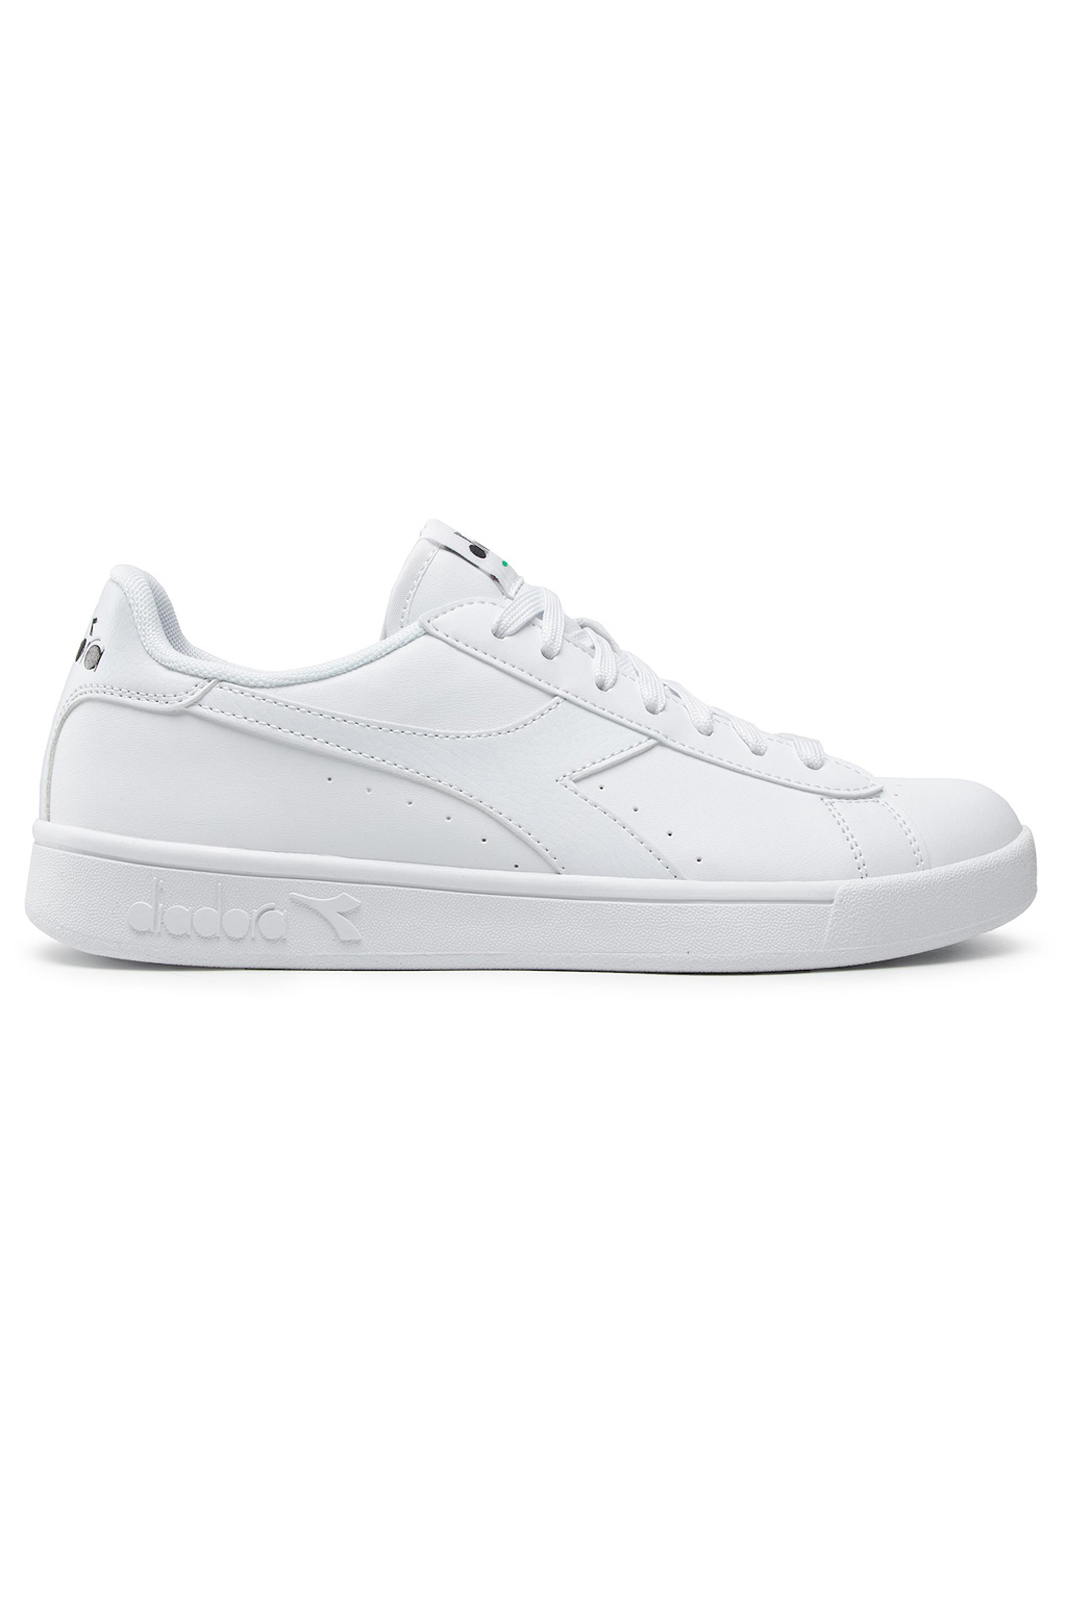 Ανδρικά > Παπούτσια > Sneaker > Παπούτσι Low Cut Diadora - TORNEO - WHITE/WHITE/BLACK